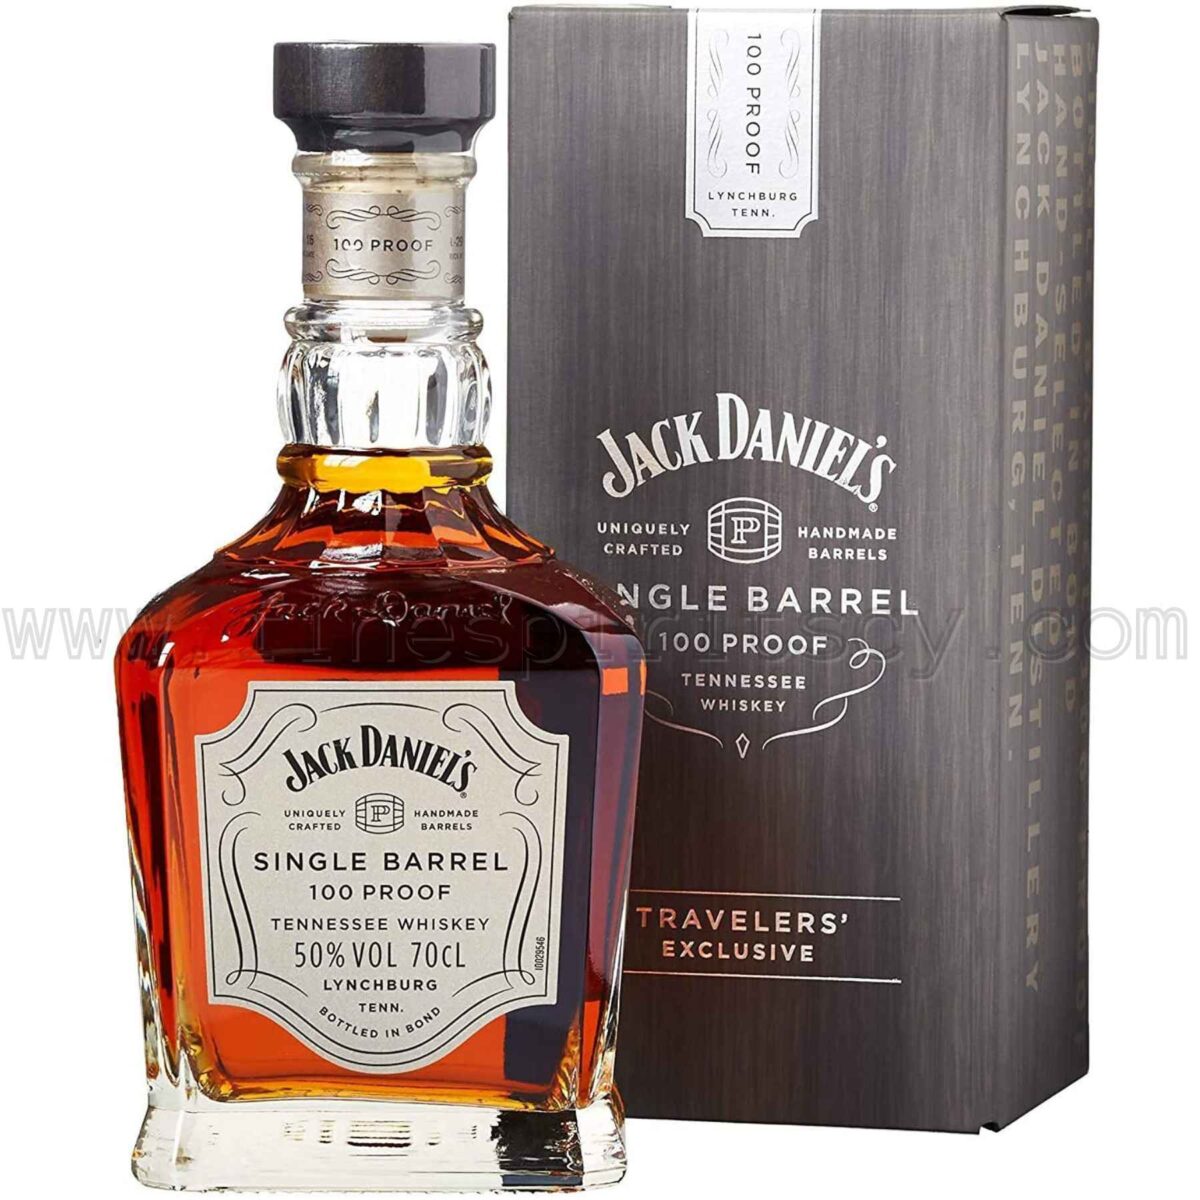 Jack Daniels Single Barrel 100 Proof 50% FSCY Cyprus Price 70cl